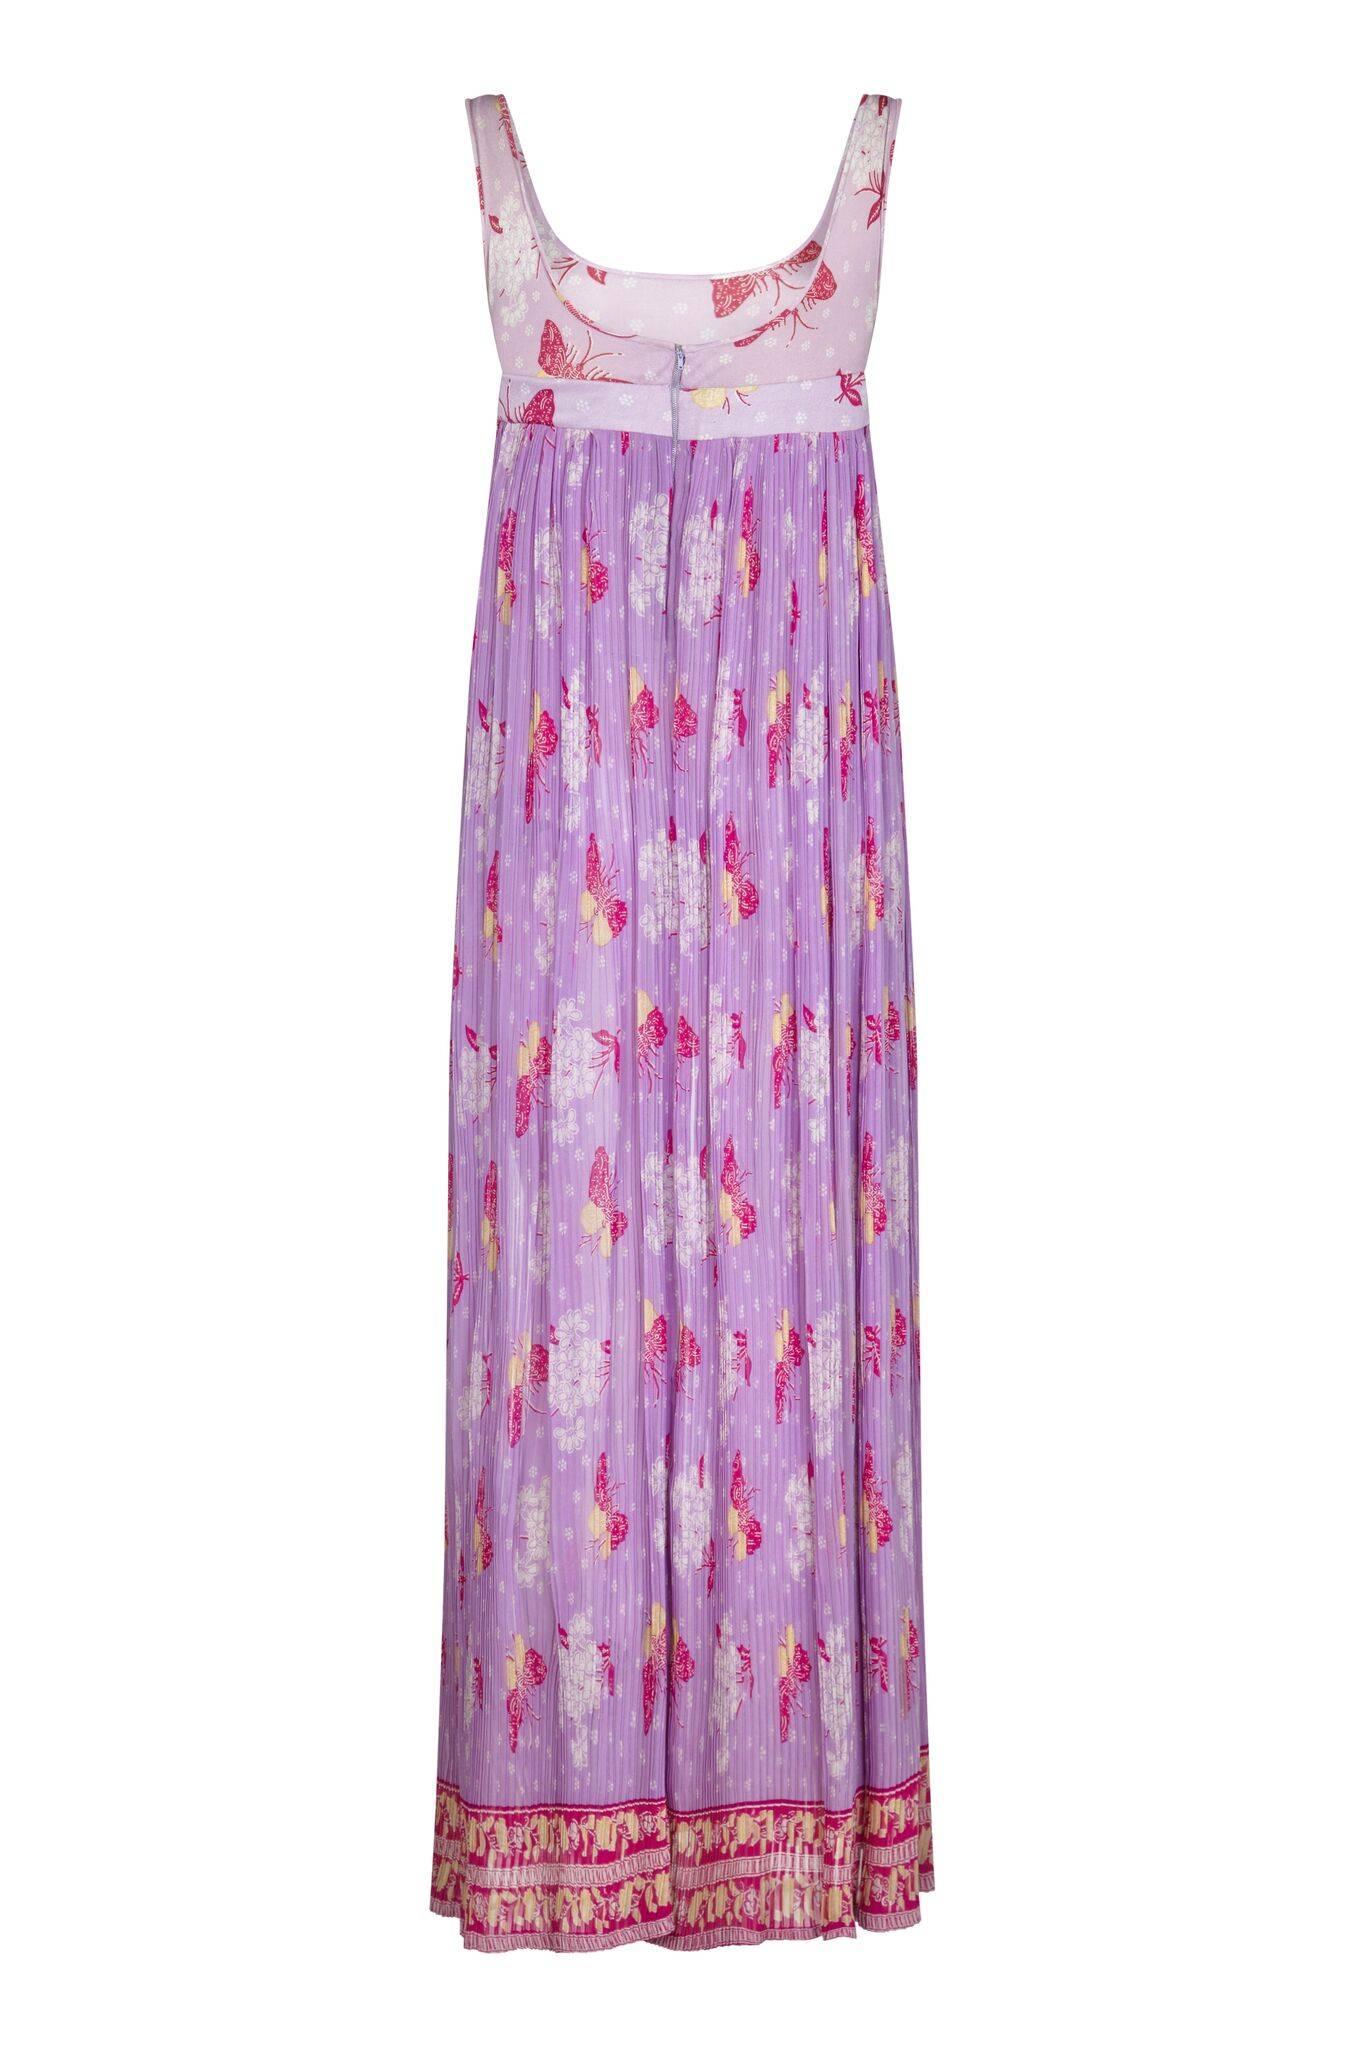 Cette jolie robe empire violette des années 1970 avec motif papillon a un côté bohème et estival. La robe longue est composée d'un tissu fin en rayonne pour la jupe dans une teinte lilas qui s'adoucit en une teinte rose autour du corsage en jersey,